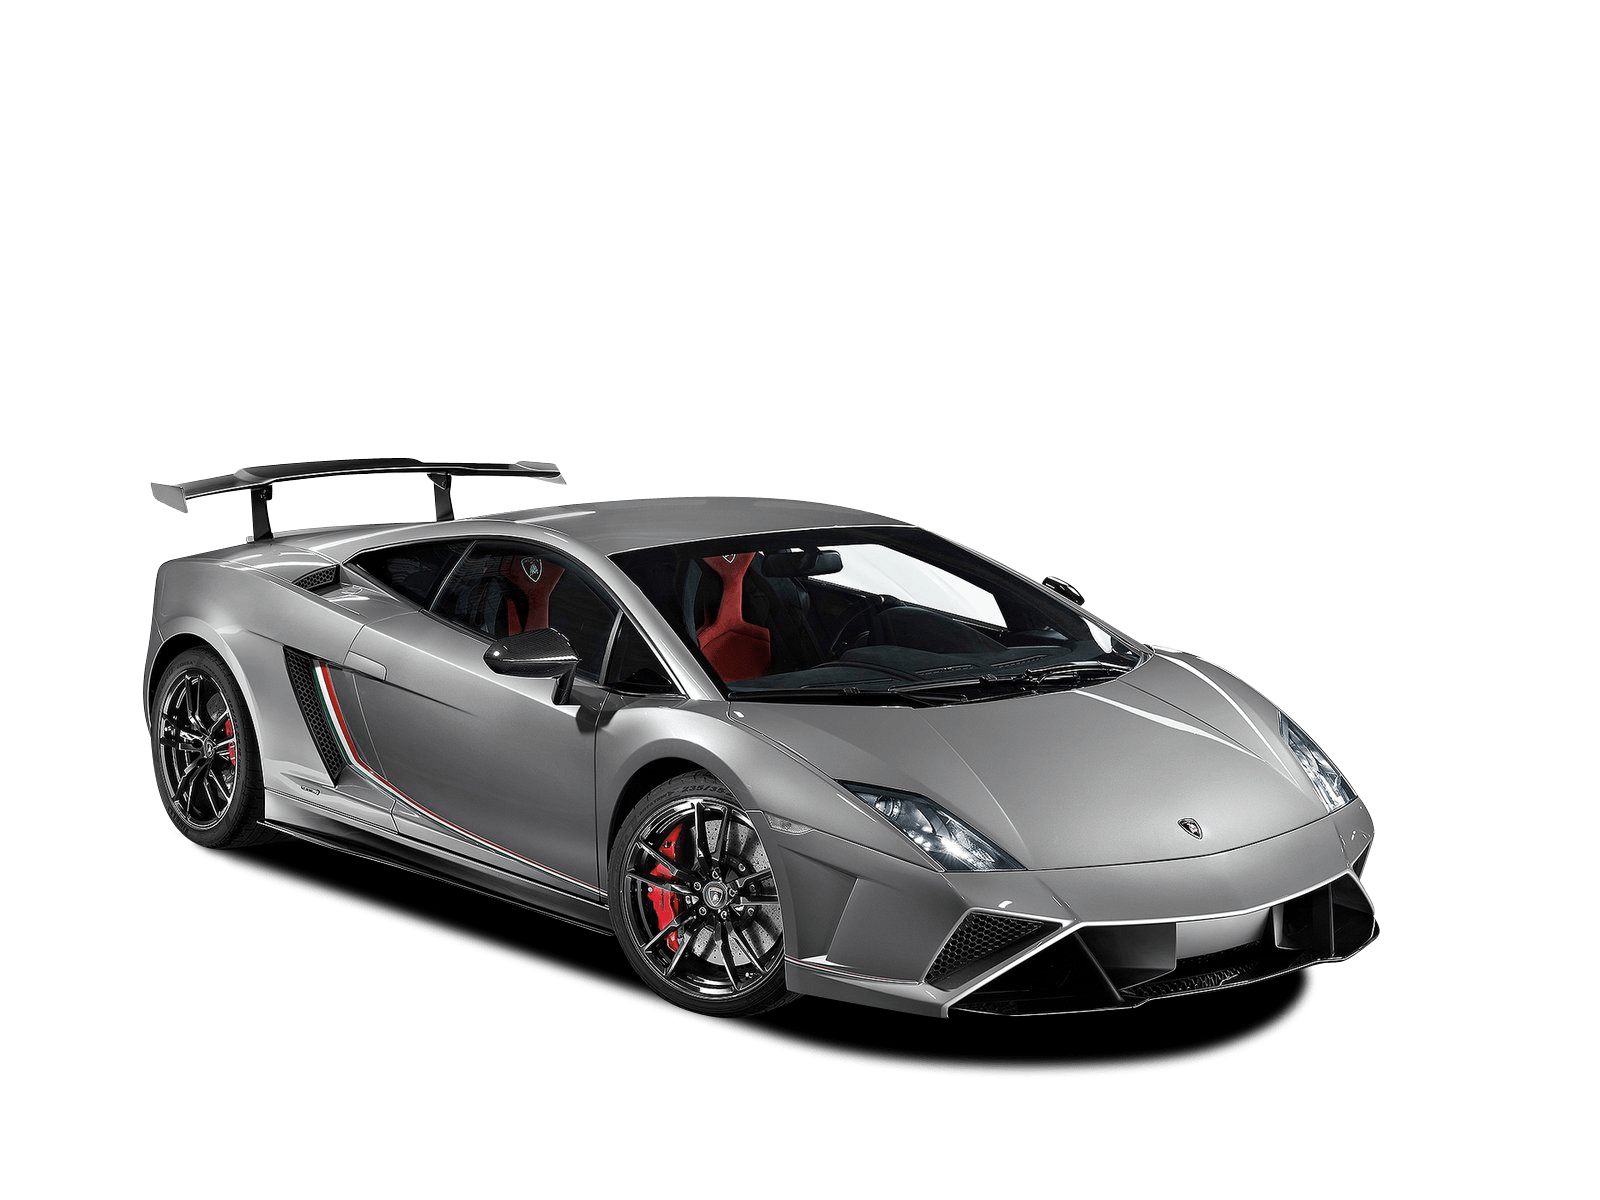 Lamborghini Gallardo Review, For Sale, Specs, Models & News in Australia |  CarsGuide